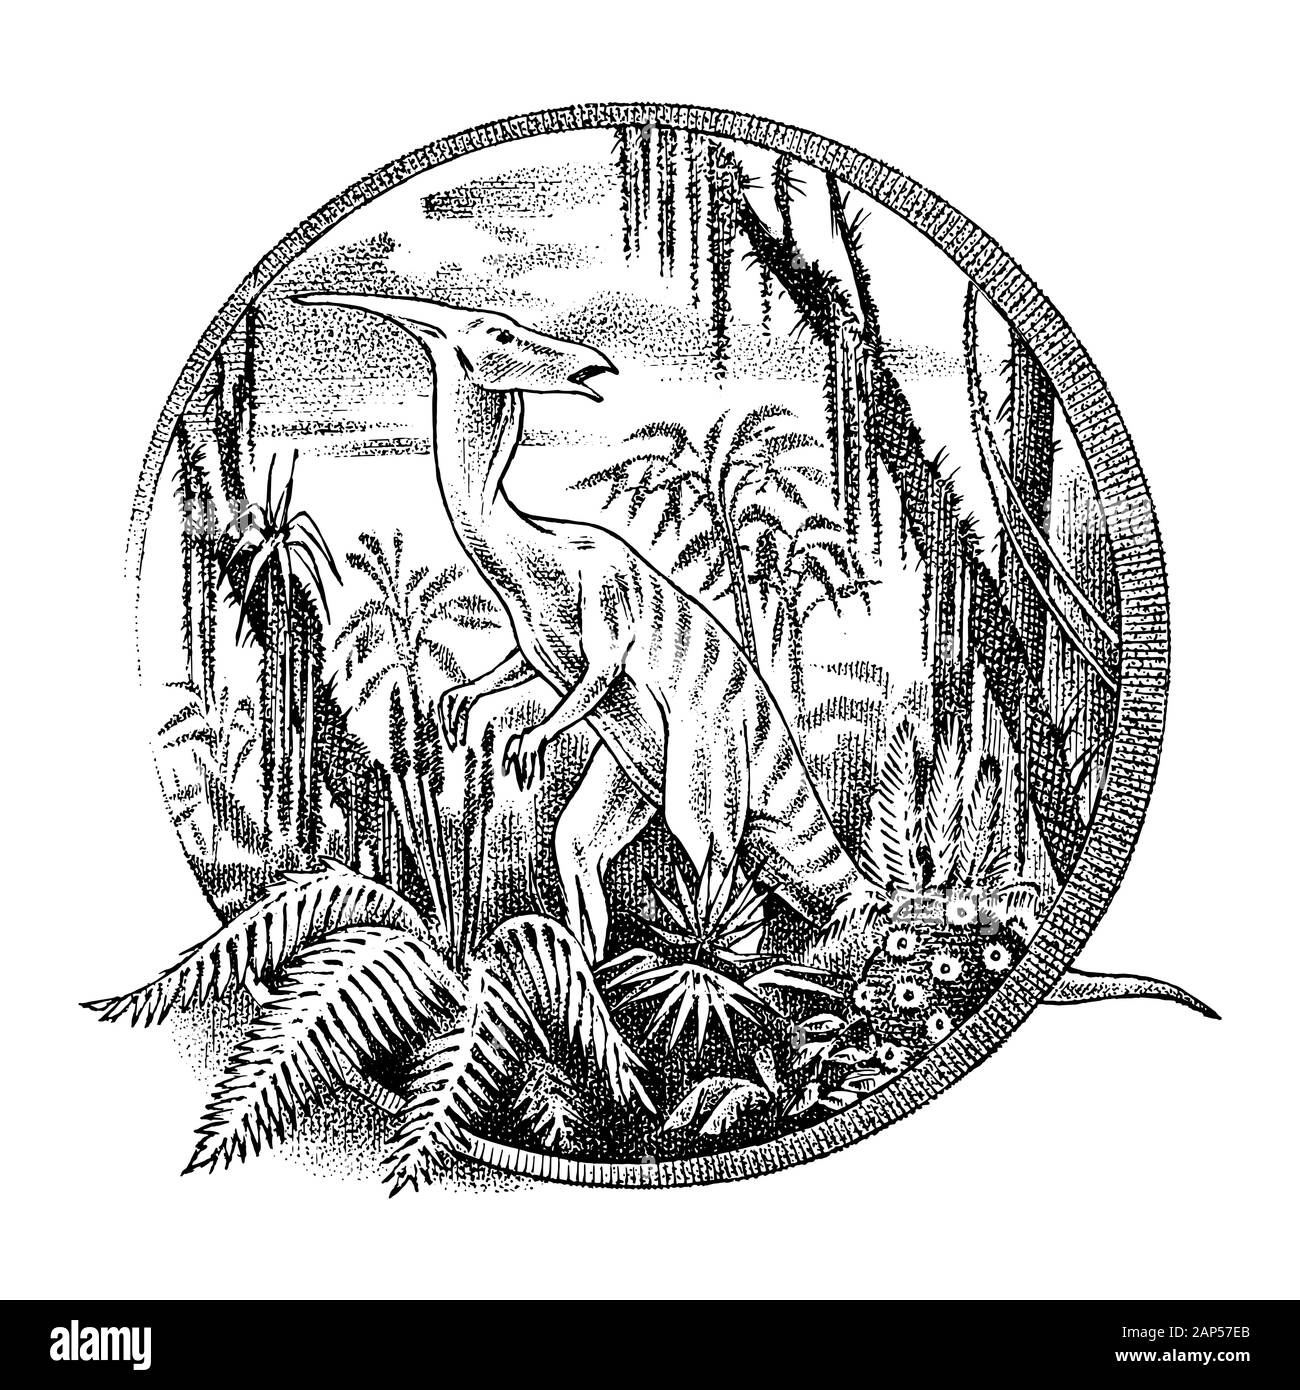 Vintage paesaggio con un dinosauro nella foresta pluviale. Vecchio modello retrò per logo o etichetta. Disegnata a mano inciso schizzo in bianco e nero. Illustrazione Vettoriale Illustrazione Vettoriale